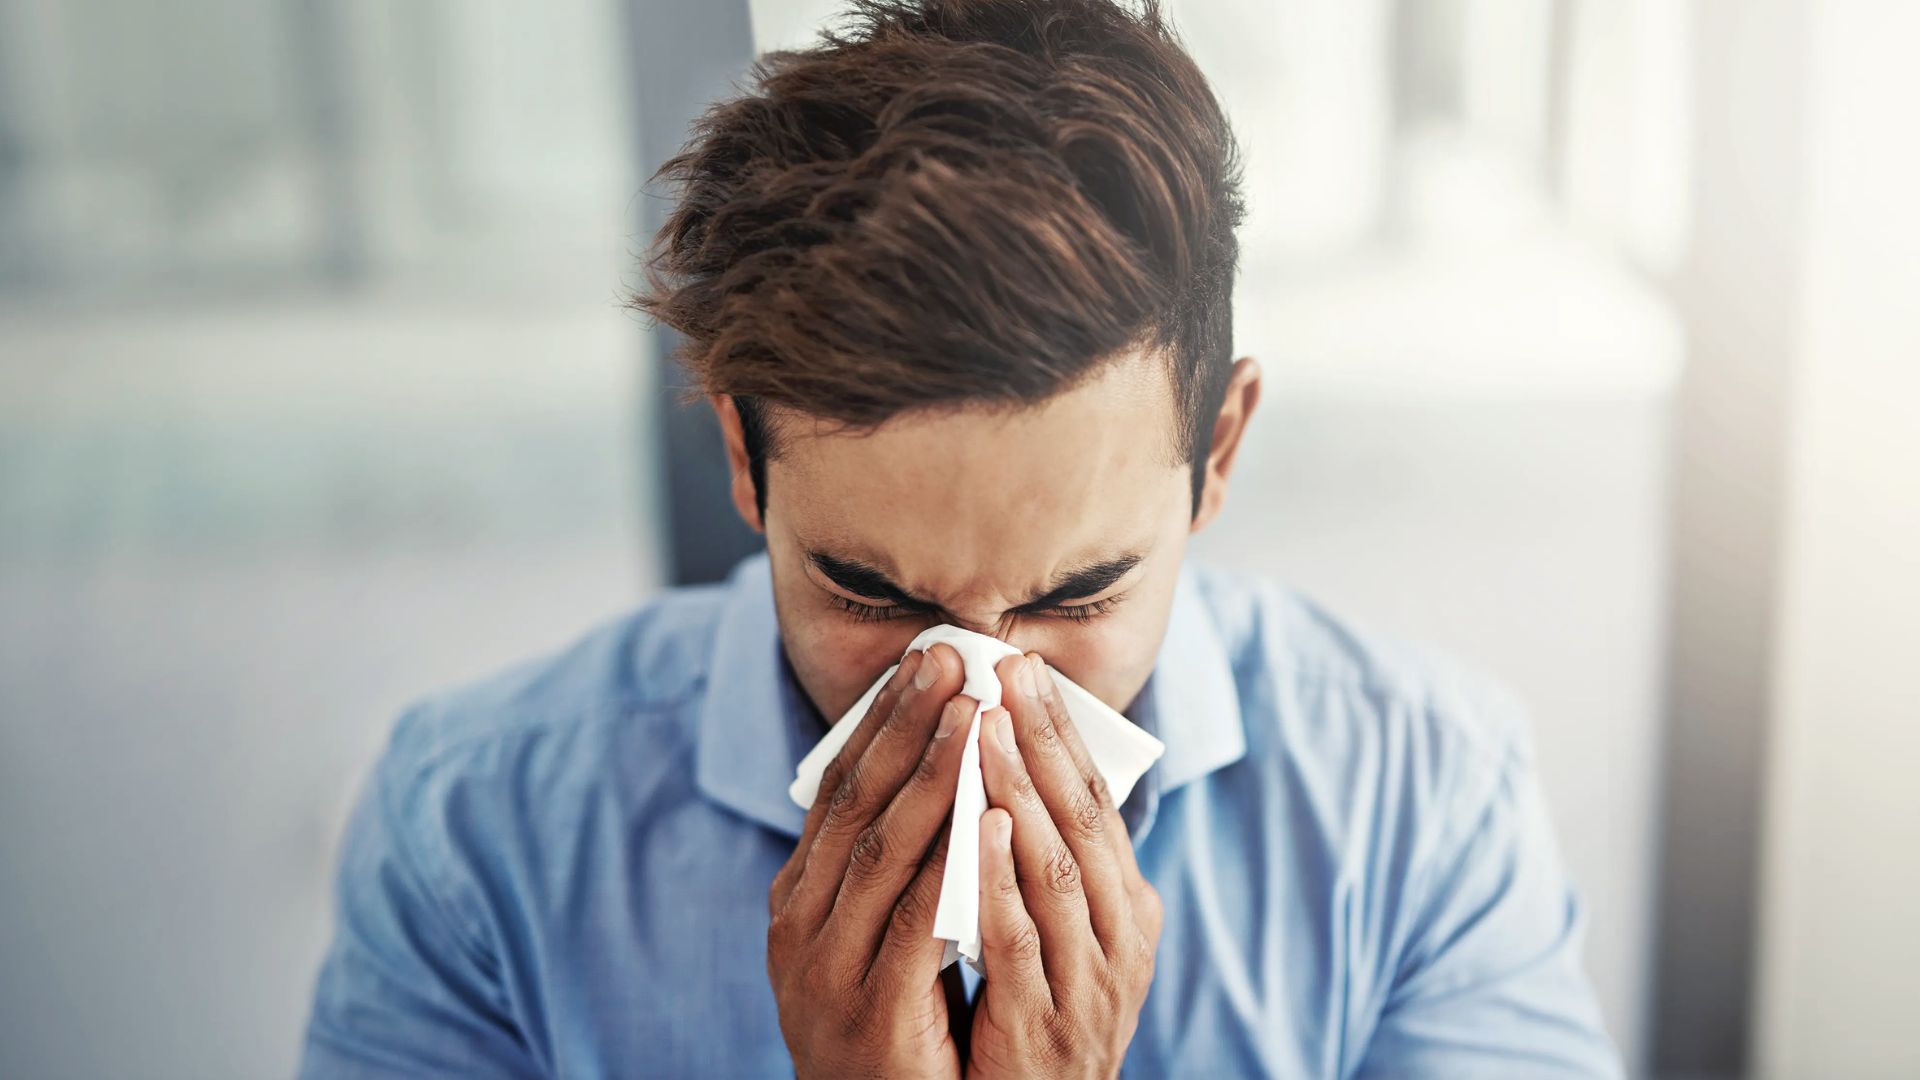 ¿Por qué decimos ‘salud’ cuando alguien estornuda? Conoce el origen de esta costumbre